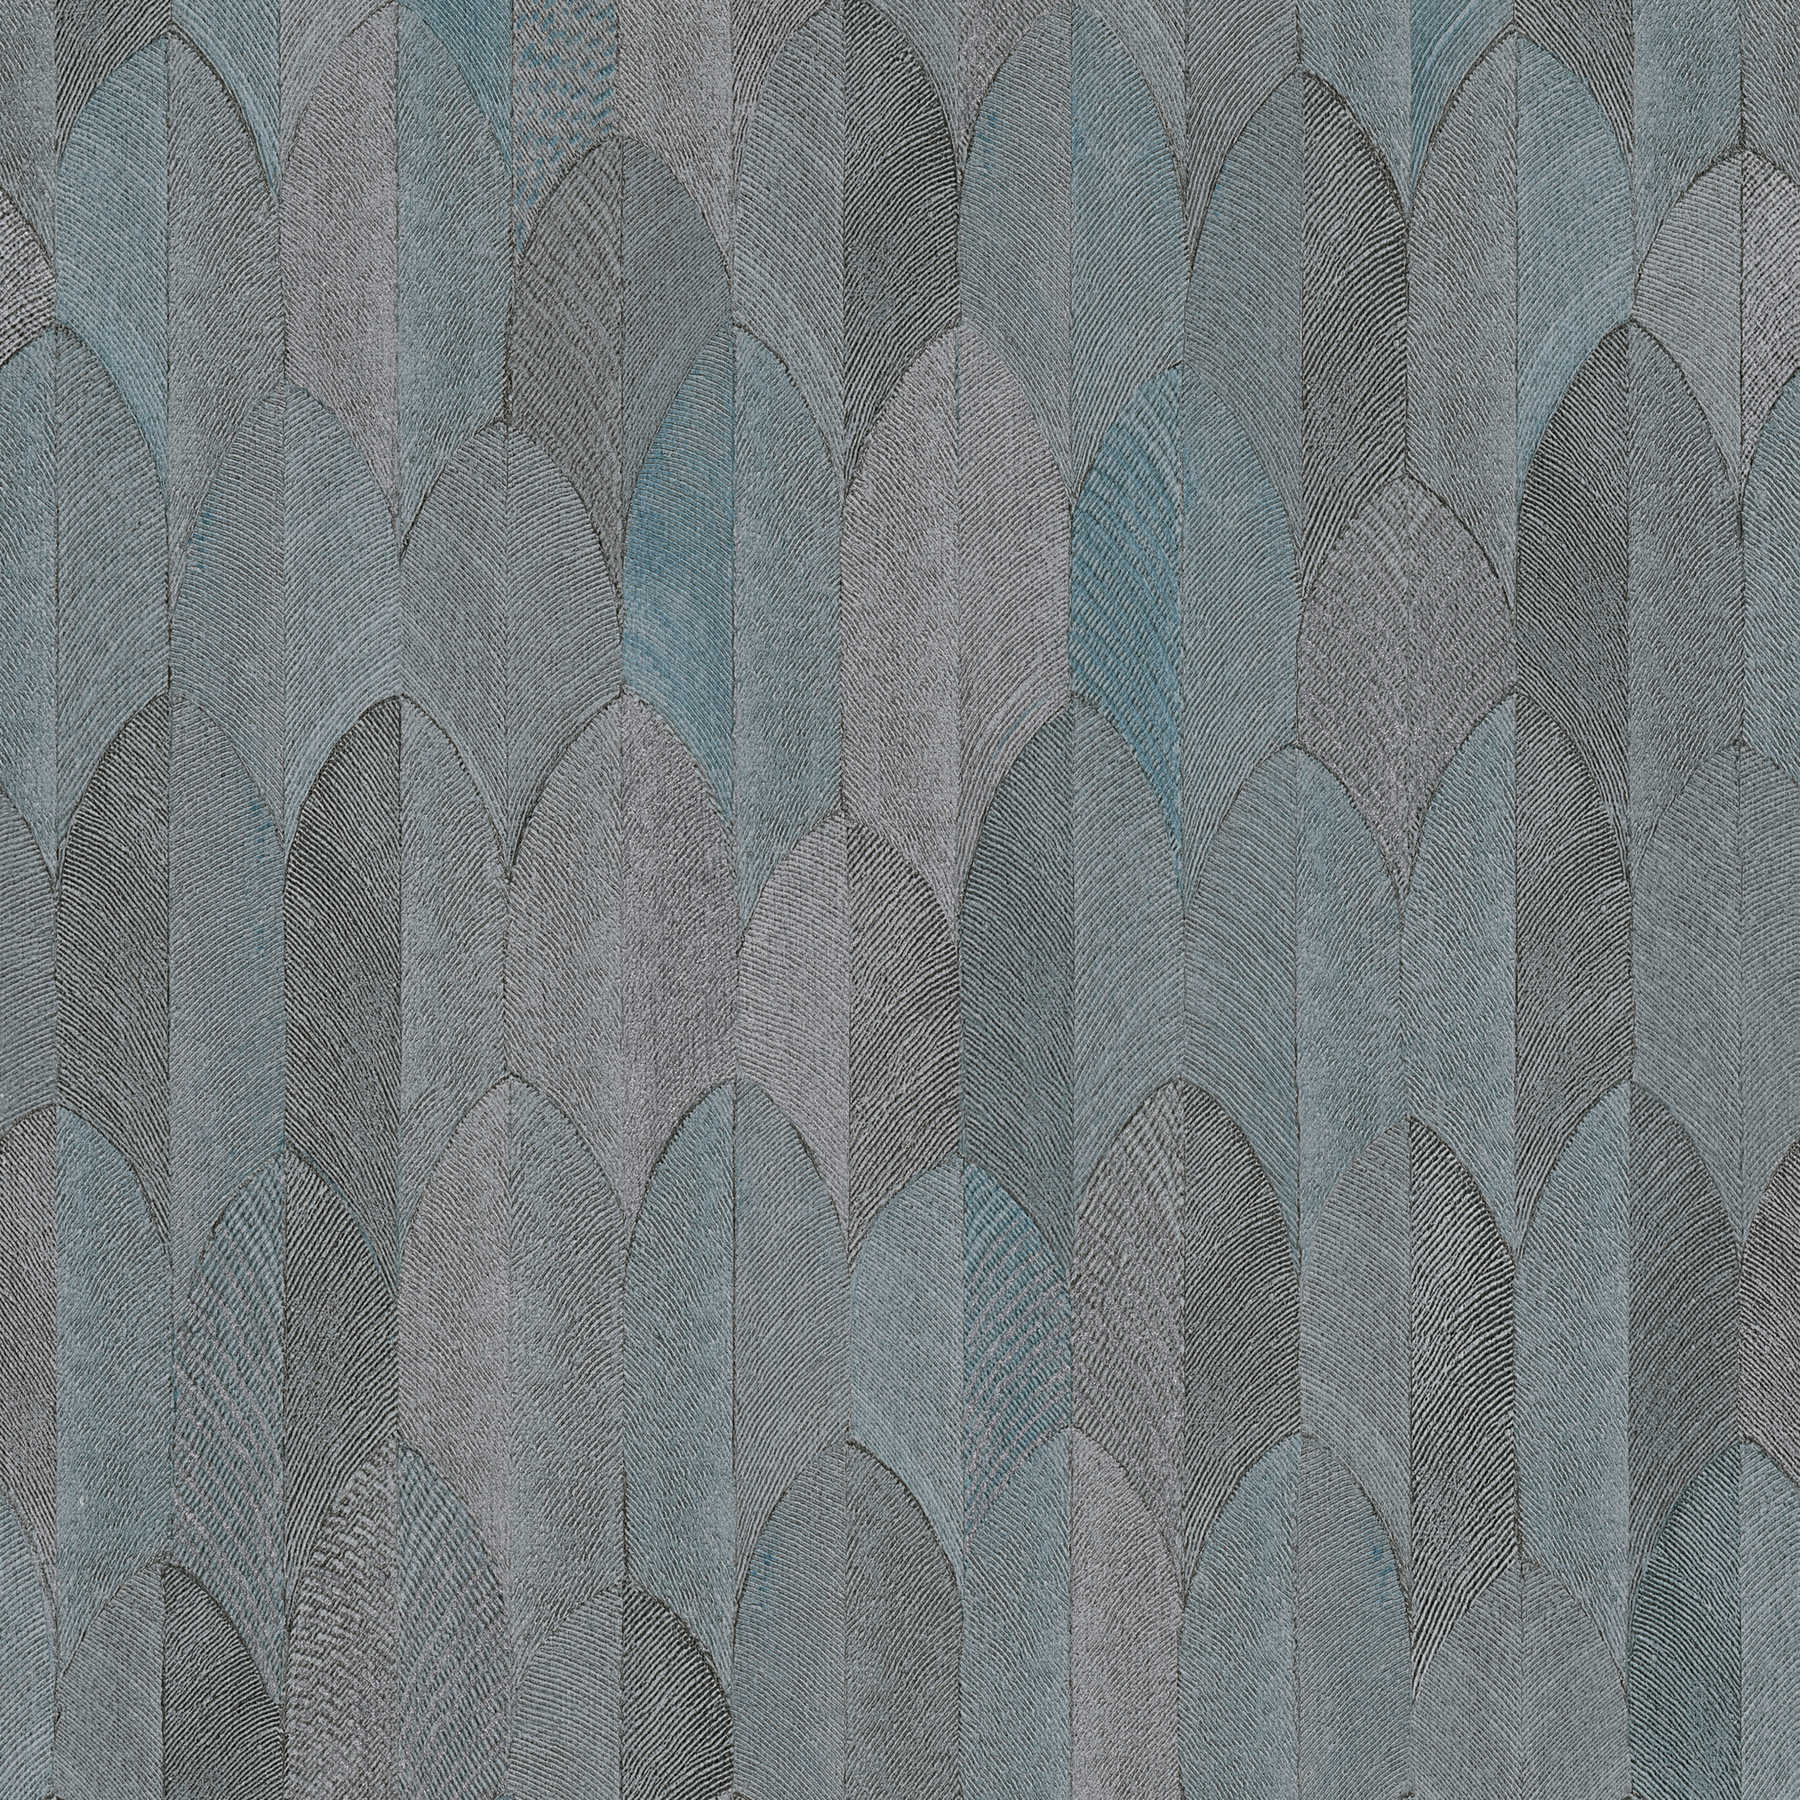 Symetrisch designbehang met metaaleffect - grijs, blauw, zwart
